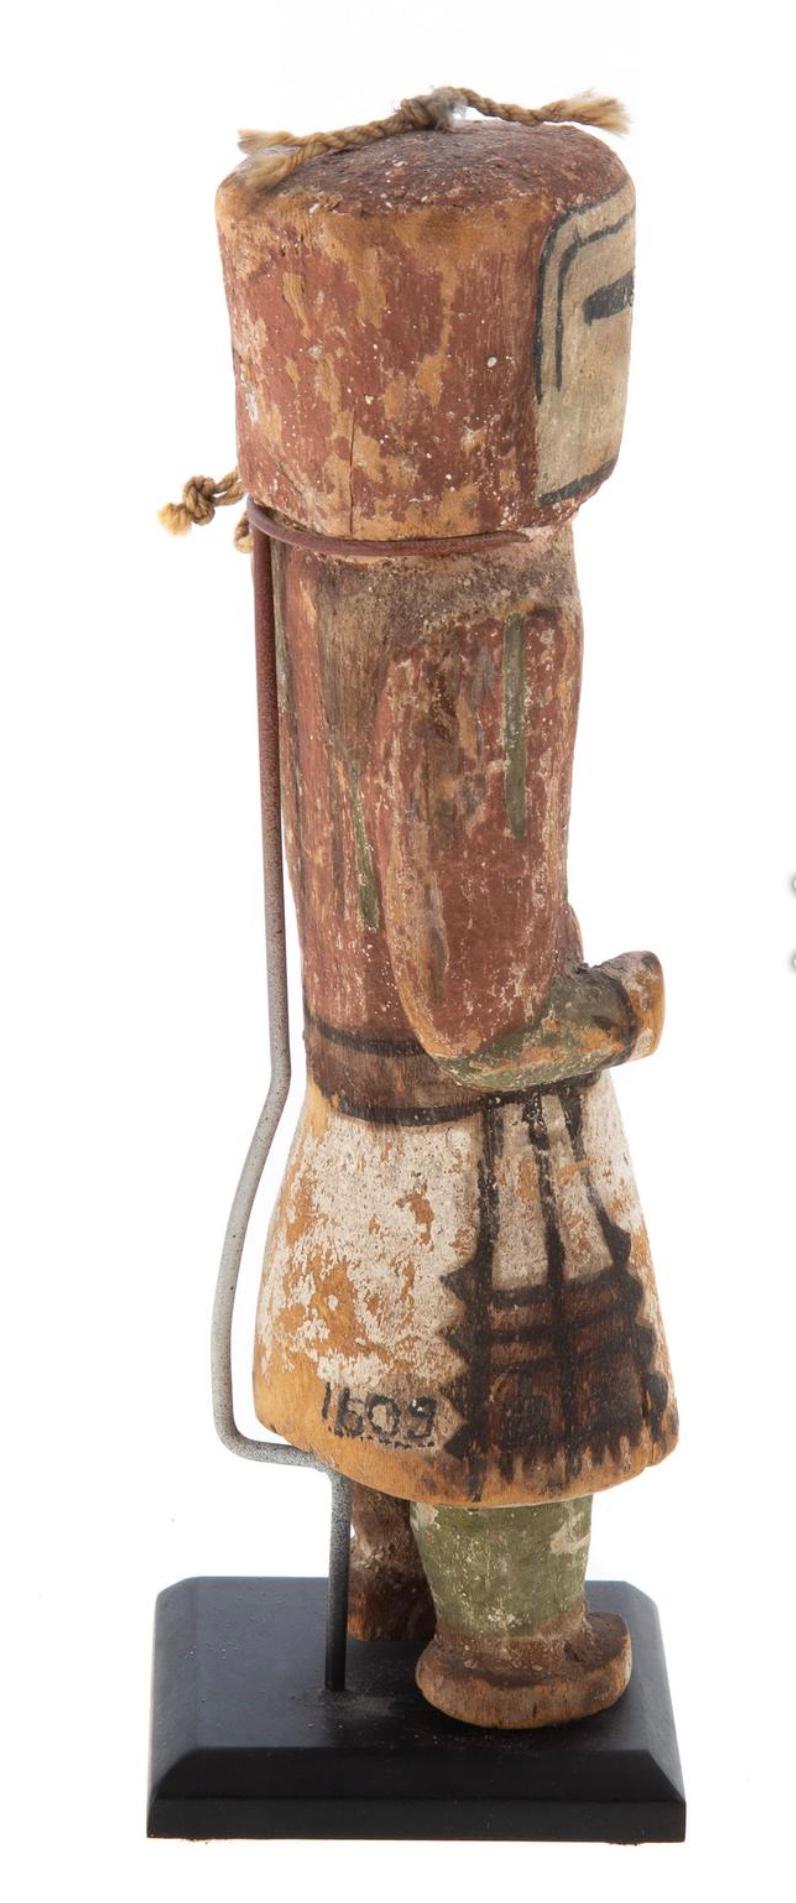 poupée Kachina Hopi sculptée du 19ème siècle.
Circa 1900 : bois de coton avec pigments de terre, 7 3/8 in. H., avec un support. Numéro d'inventaire de la collection au dos de la jupe.